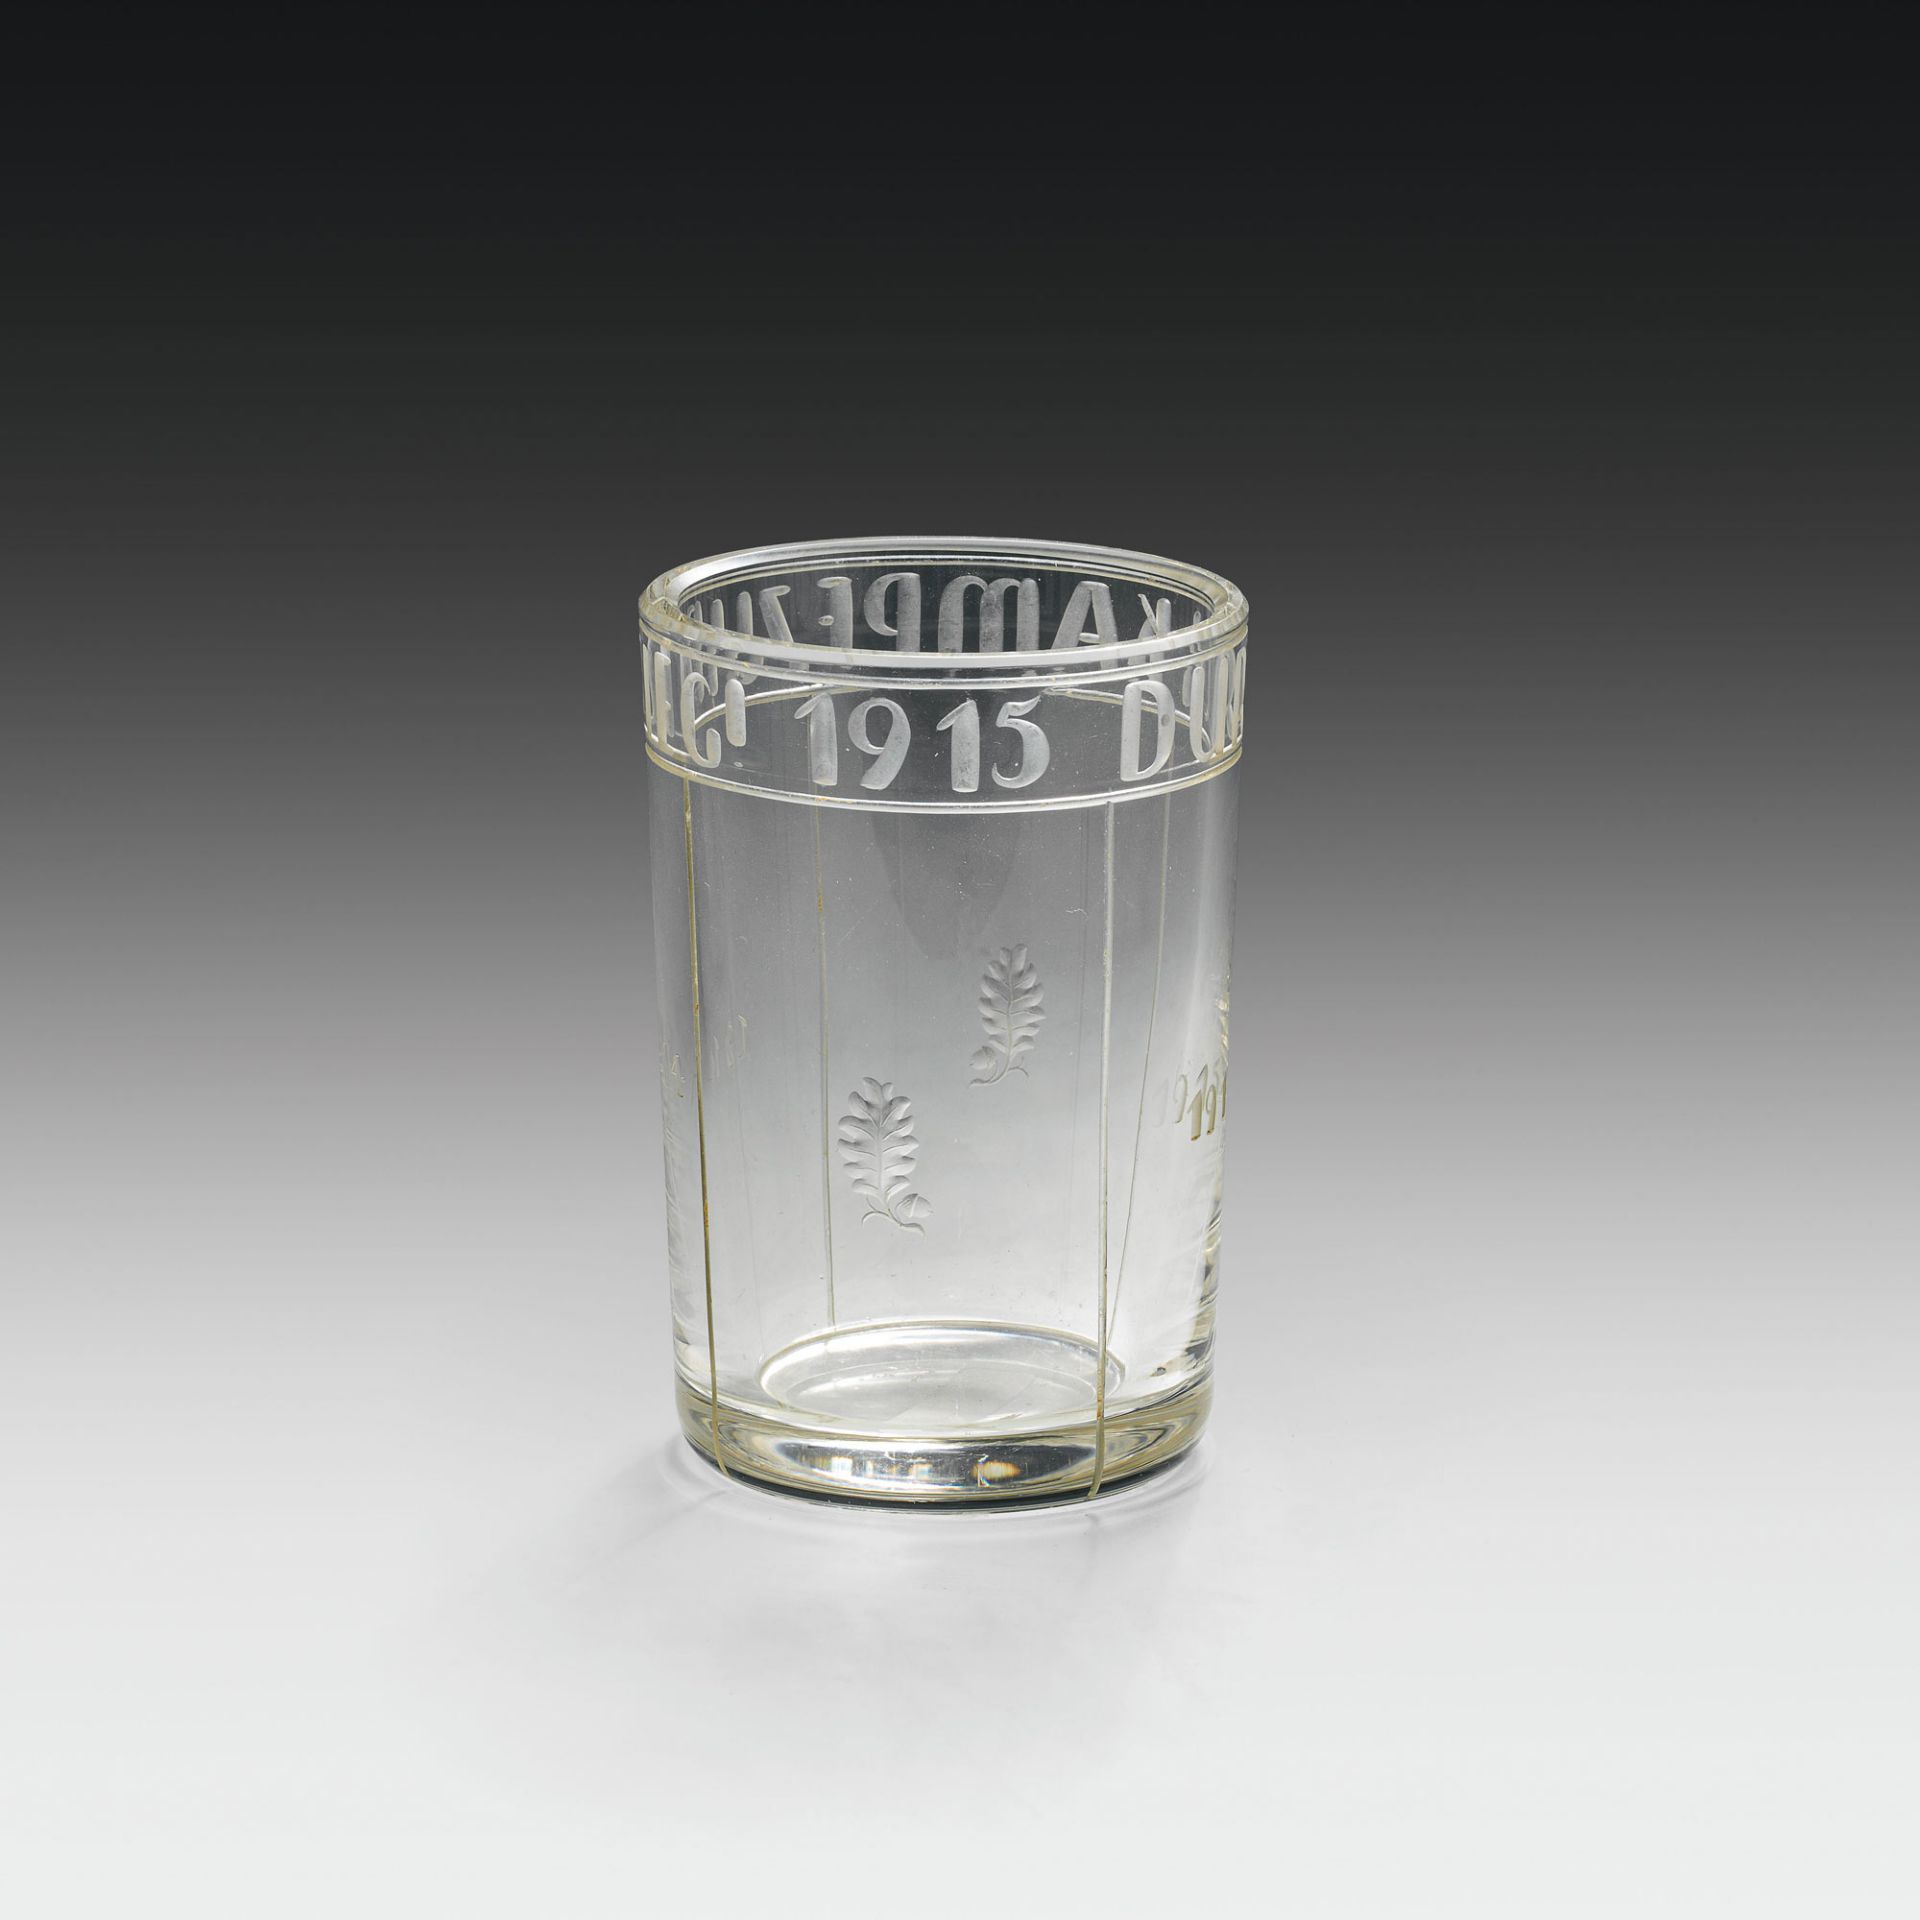 War glasscolourless glass; engraved circumferential writing "DURCH KAMPF ZUM SIEG ! 1915", "1914"